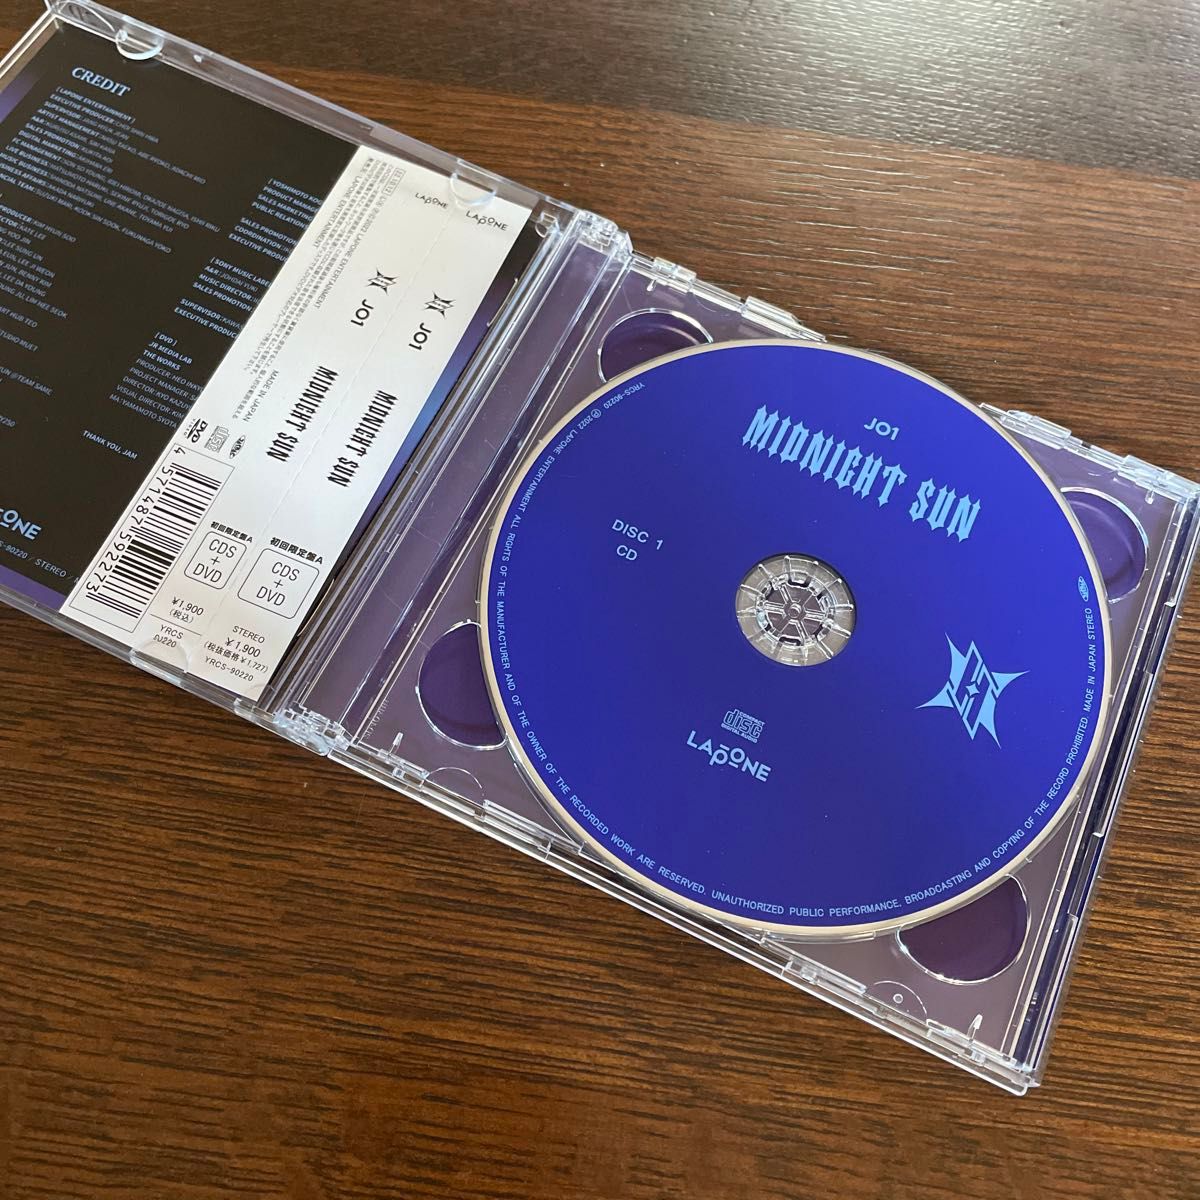 未視聴　JO1  MIDNIGHT SUN     CD  DVD   初回限定盤A